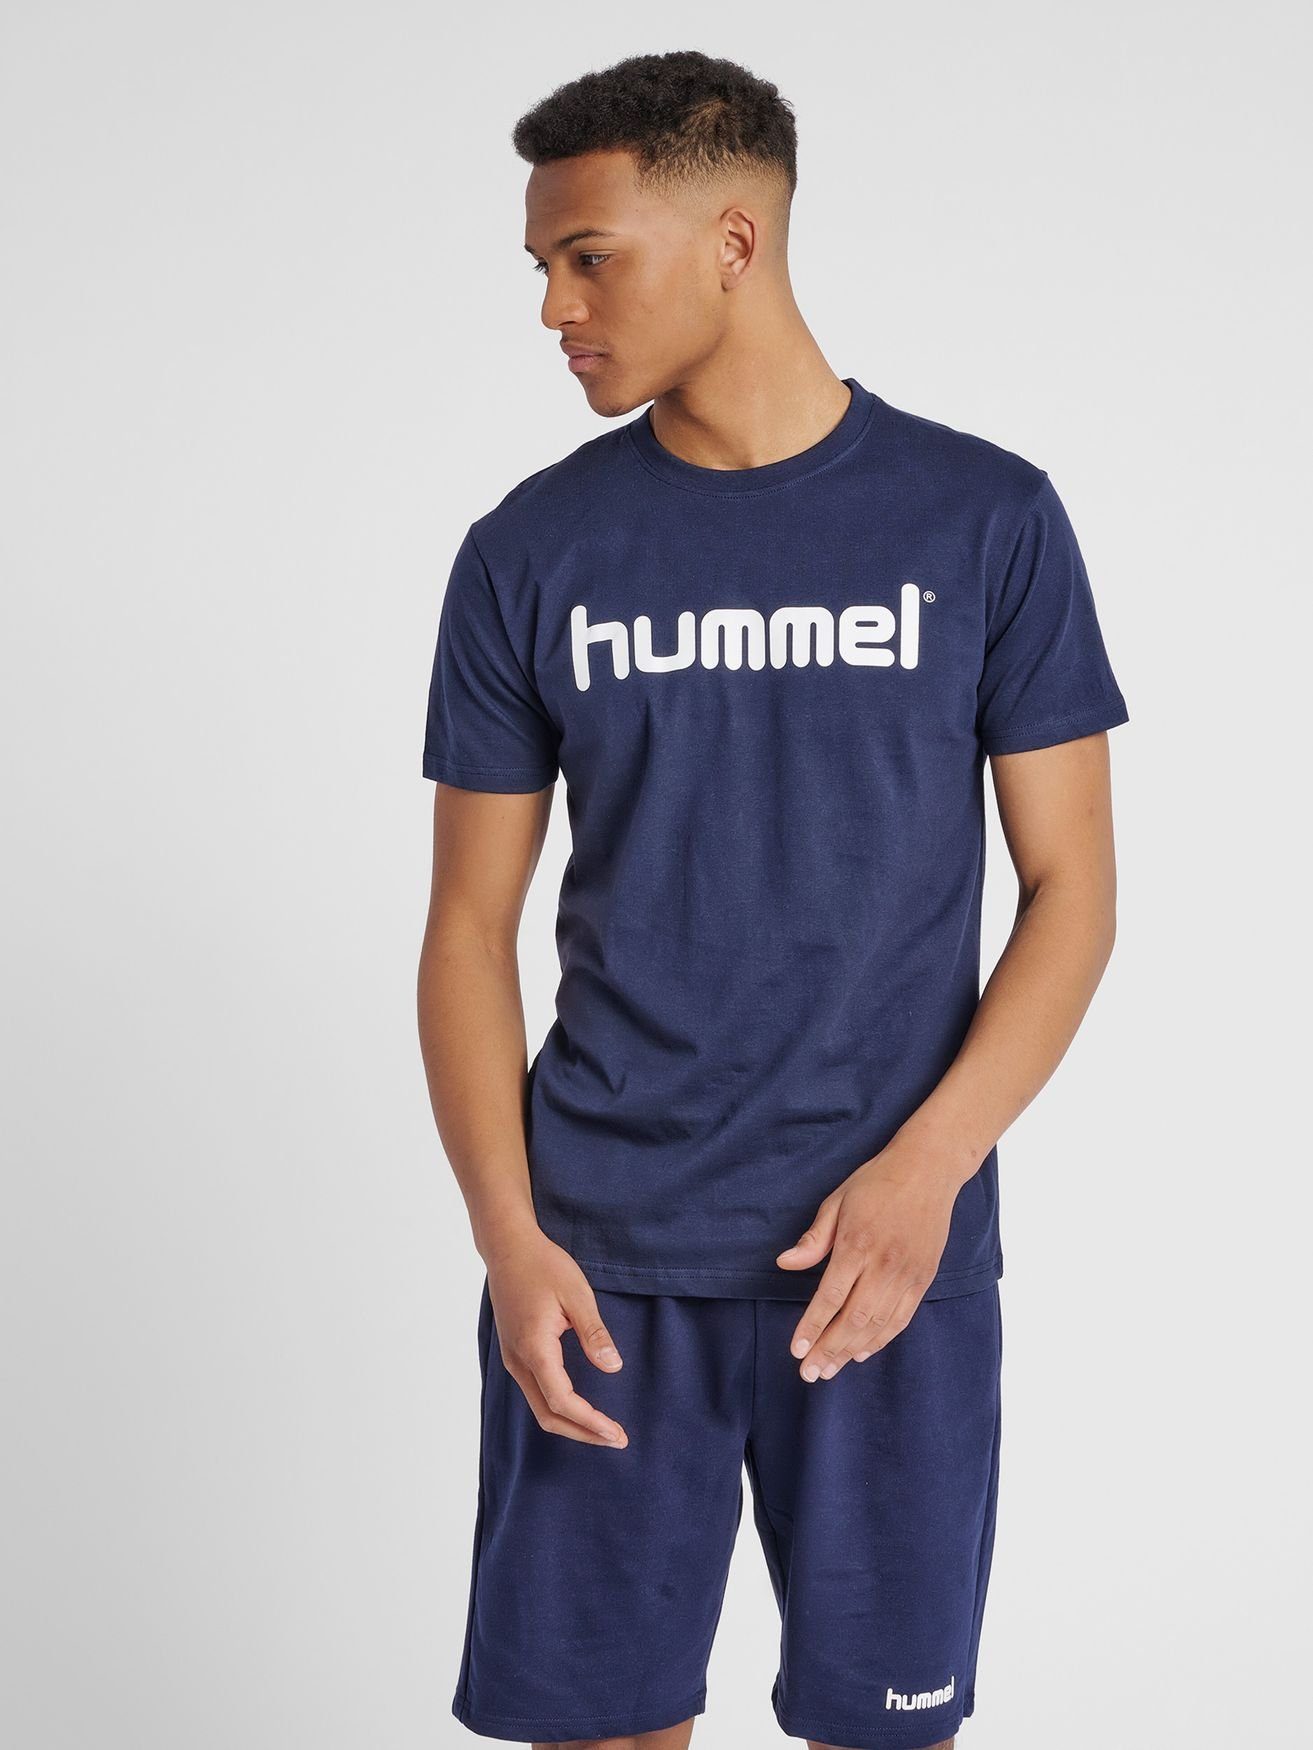 Blau hummel Sport in T-Shirt aus Baumwolle HMLGO Shirt Logo 5125 T-Shirt Kurzarm Rundhals